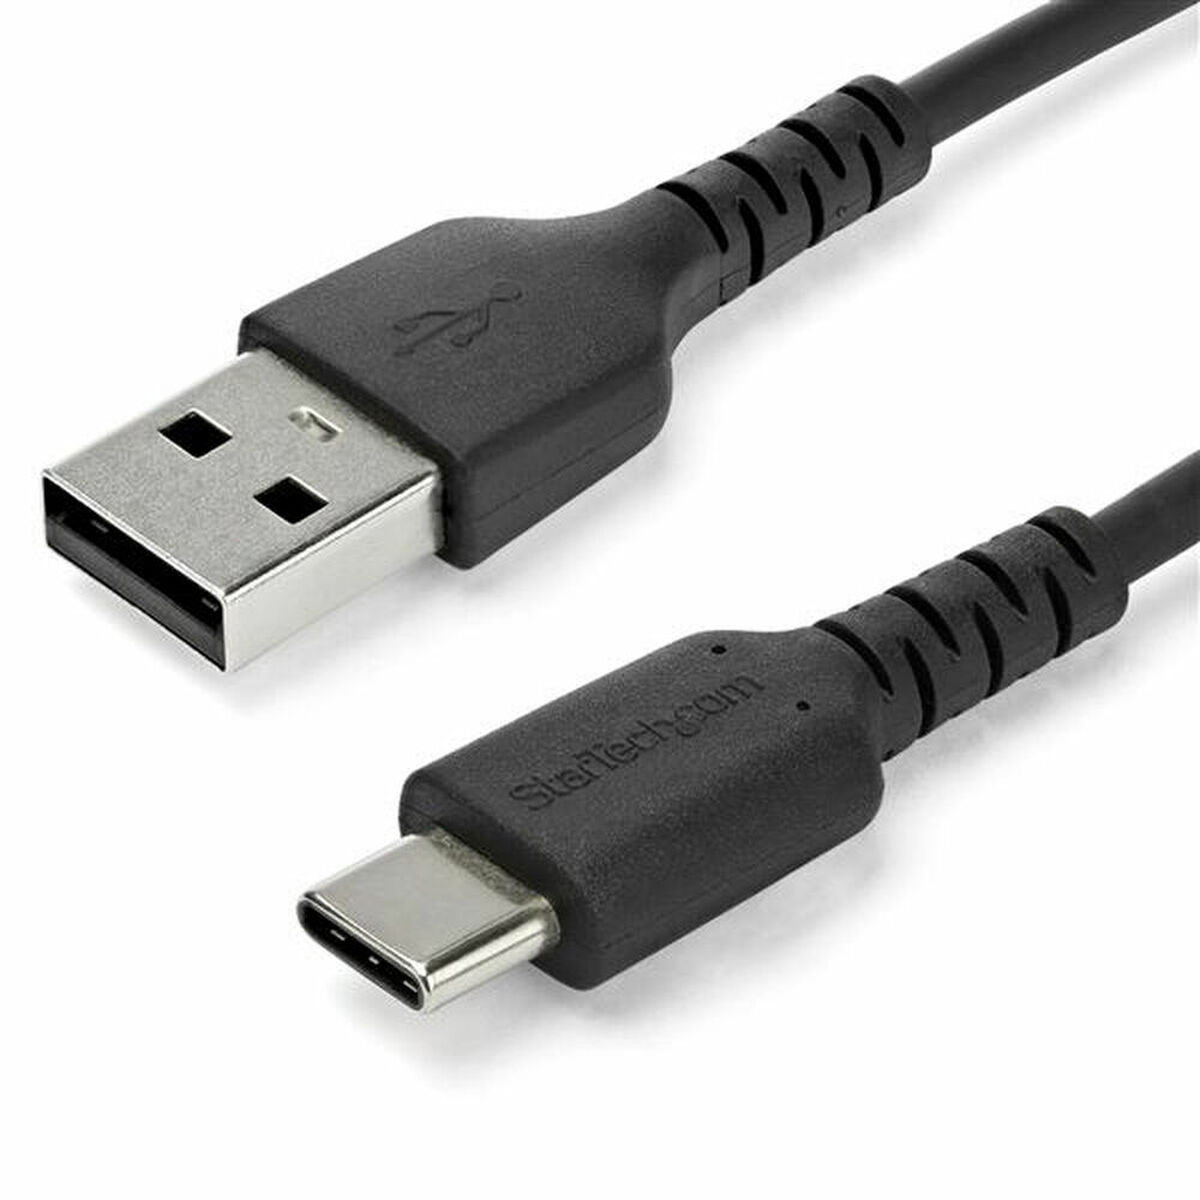 Osta tuote USB A – USB C kaapeli Startech RUSB2AC2MB           Musta verkkokaupastamme Korhone: Urheilu & Vapaa-aika 10% alennuksella koodilla KORHONE